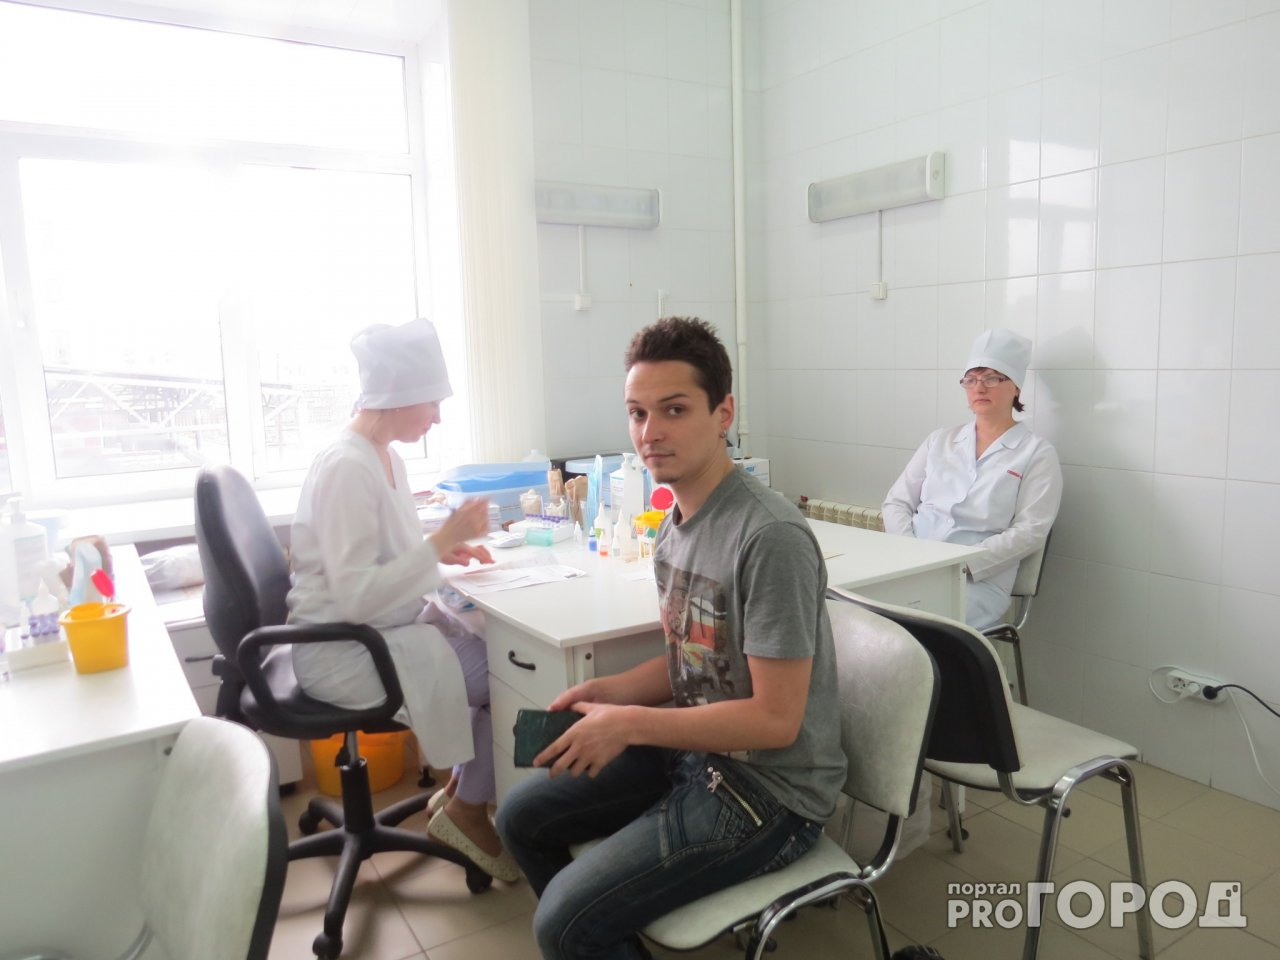 Ярославль накрыла волна гриппа и ОРВИ: к медикам обратилось 6,5 тысяч детей